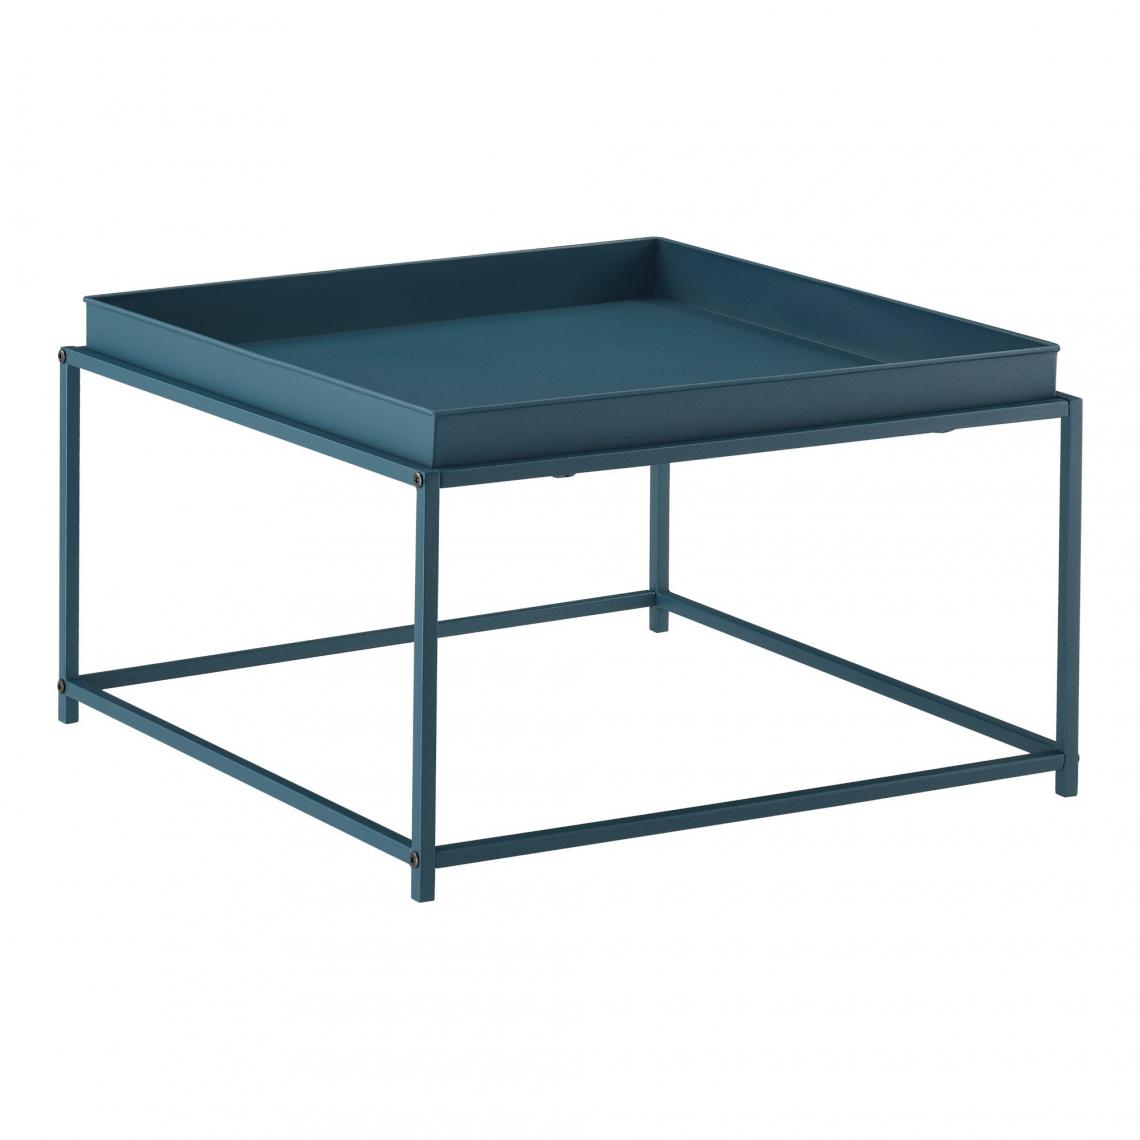 Helloshop26 - Table basse salon avec plateau amovible en métal 59 x 59 cm turquoise 03_0006131 - Tables basses